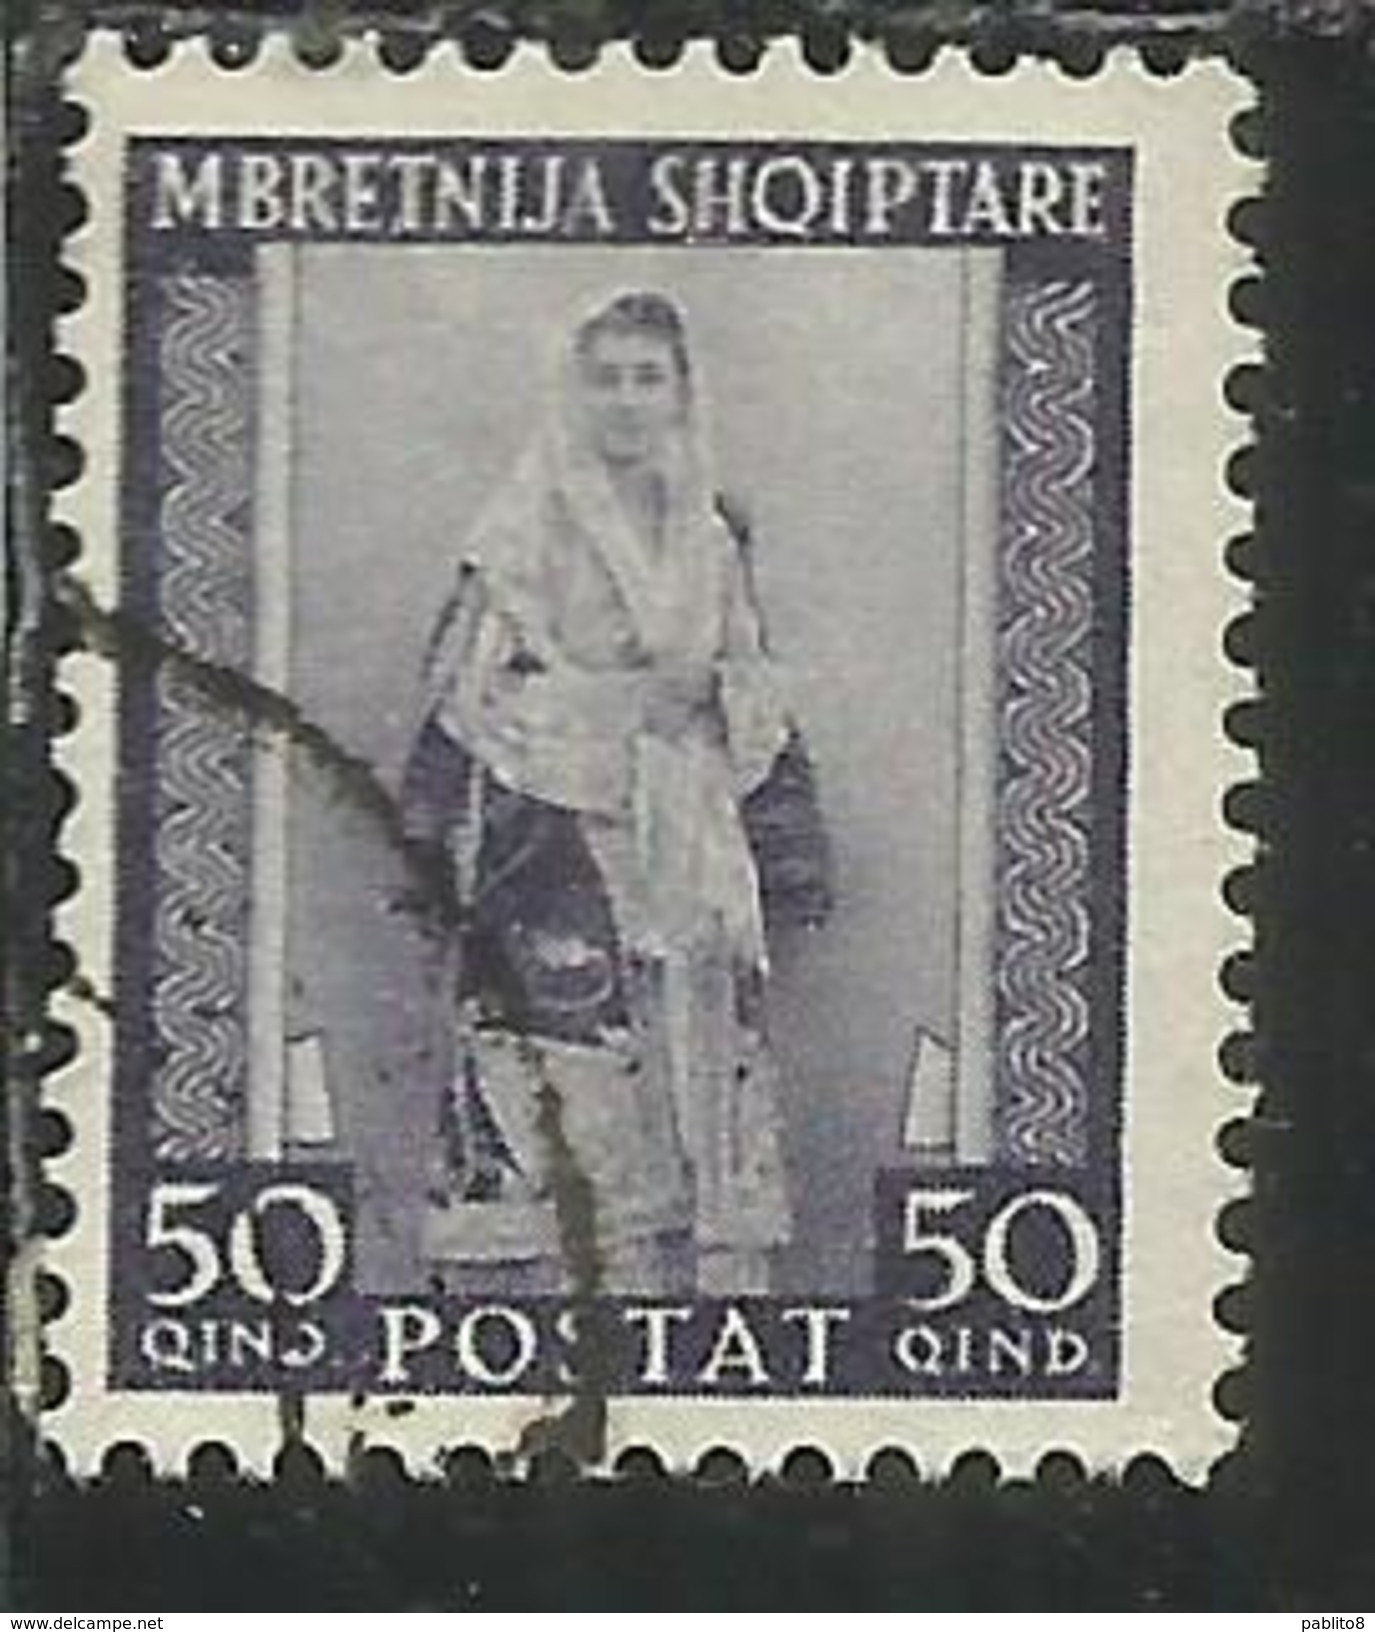 ALBANIA 1939 - 1940 POSTA ORDINARIA 50 Q USATO USED OBLITERE' - Albanie